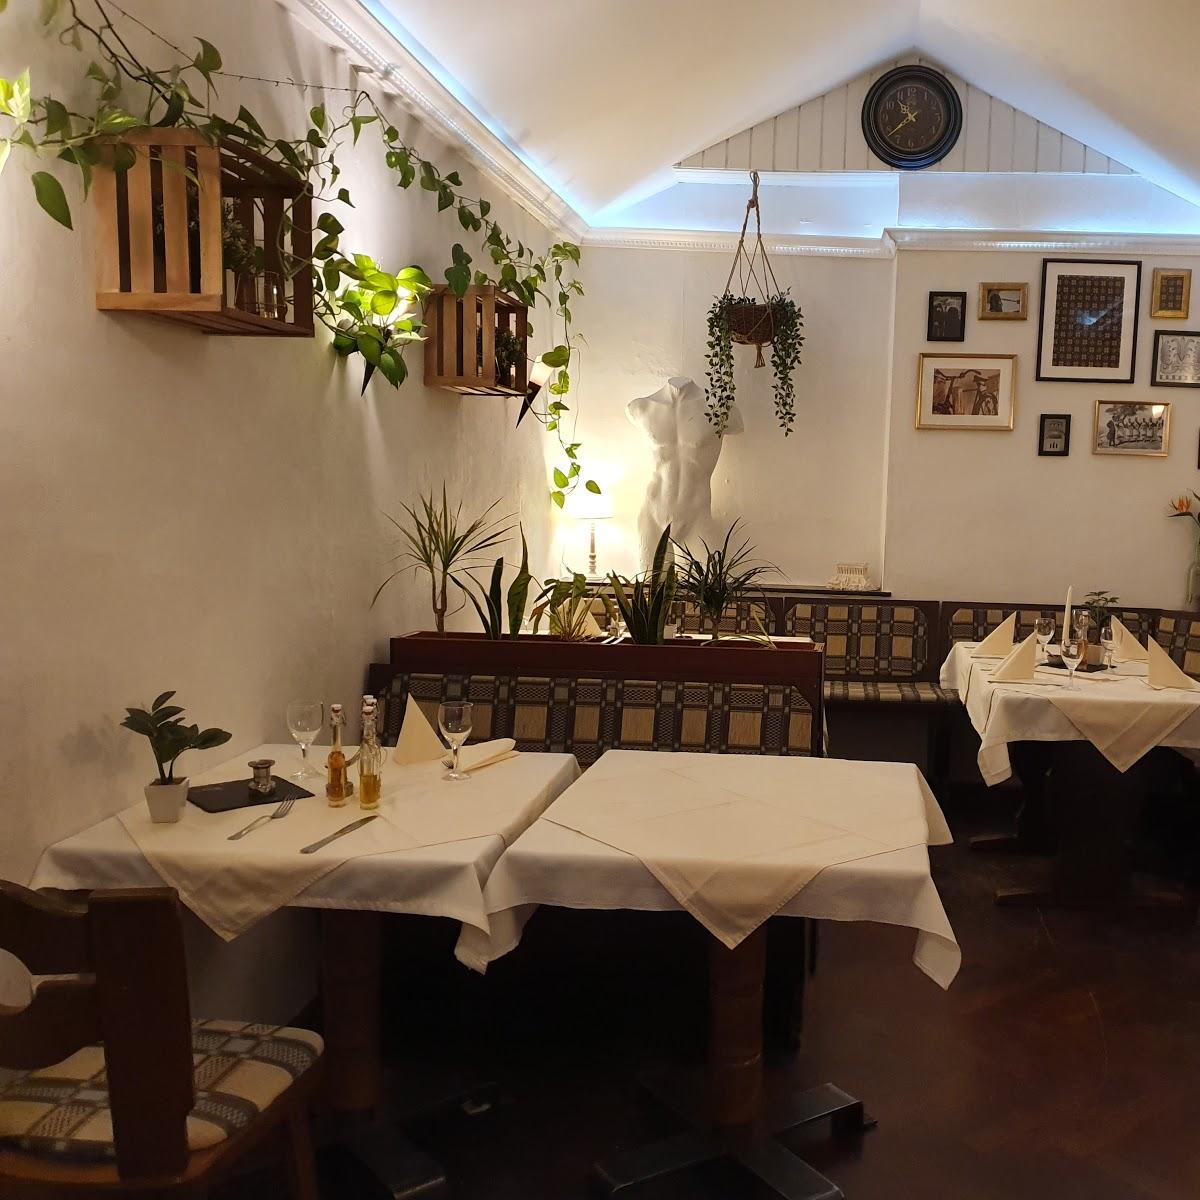 Restaurant "Restaurant Athen" in  Viersen